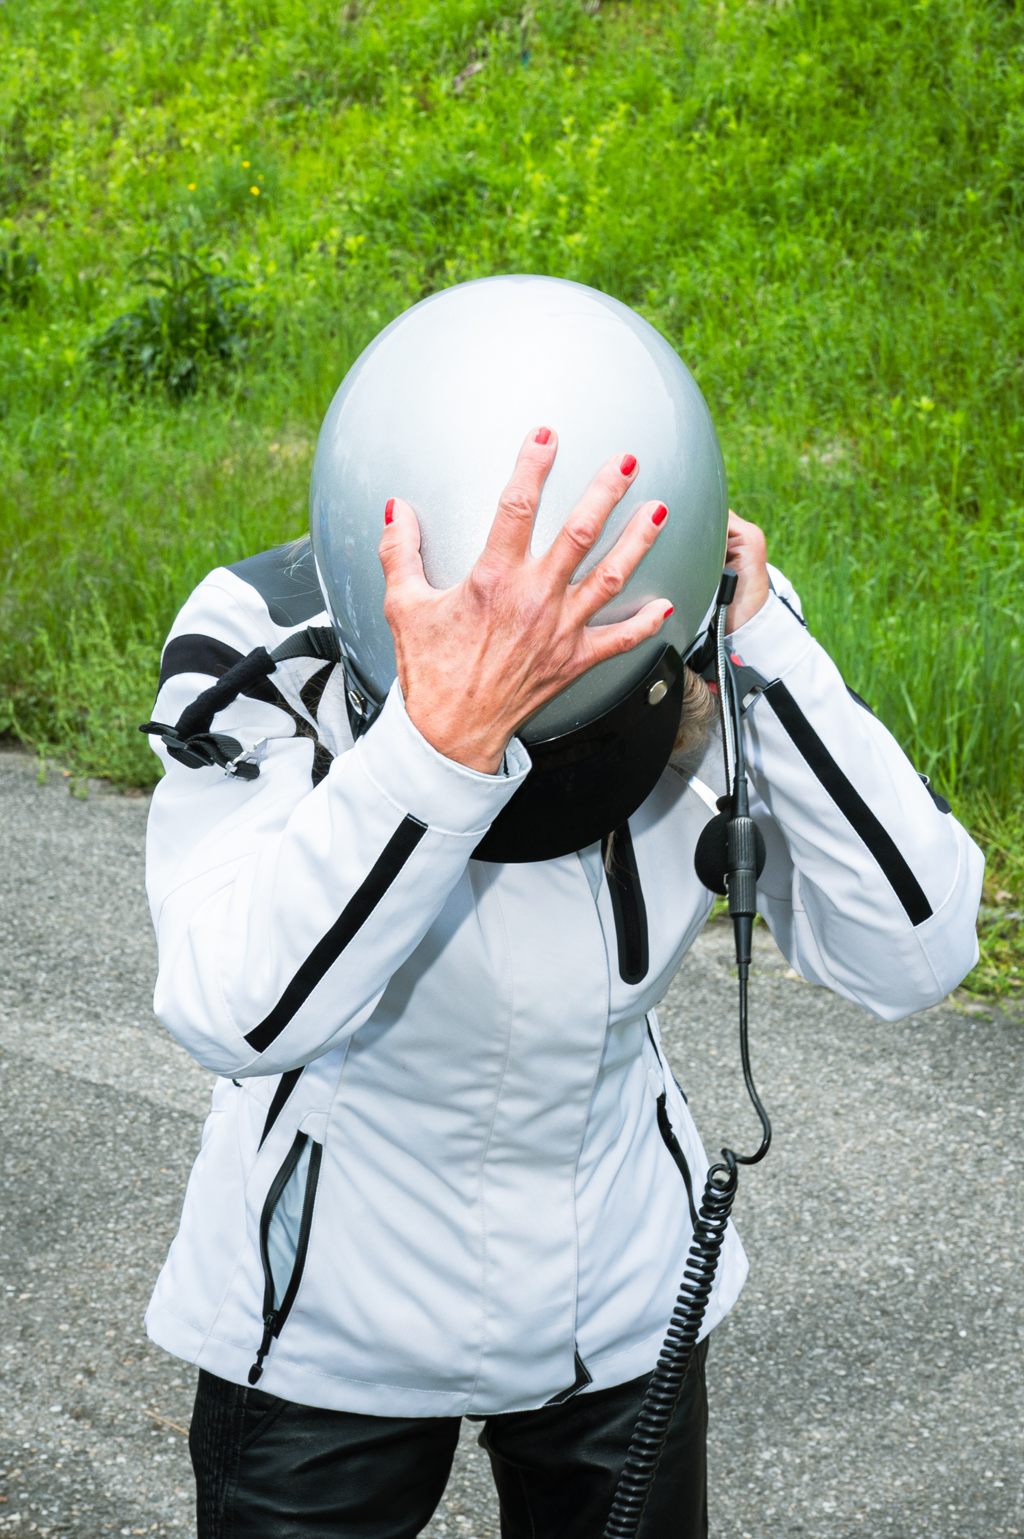 Goldwing-Fahrerin bei der Abnahme des Helms. Foto: Boris Müller